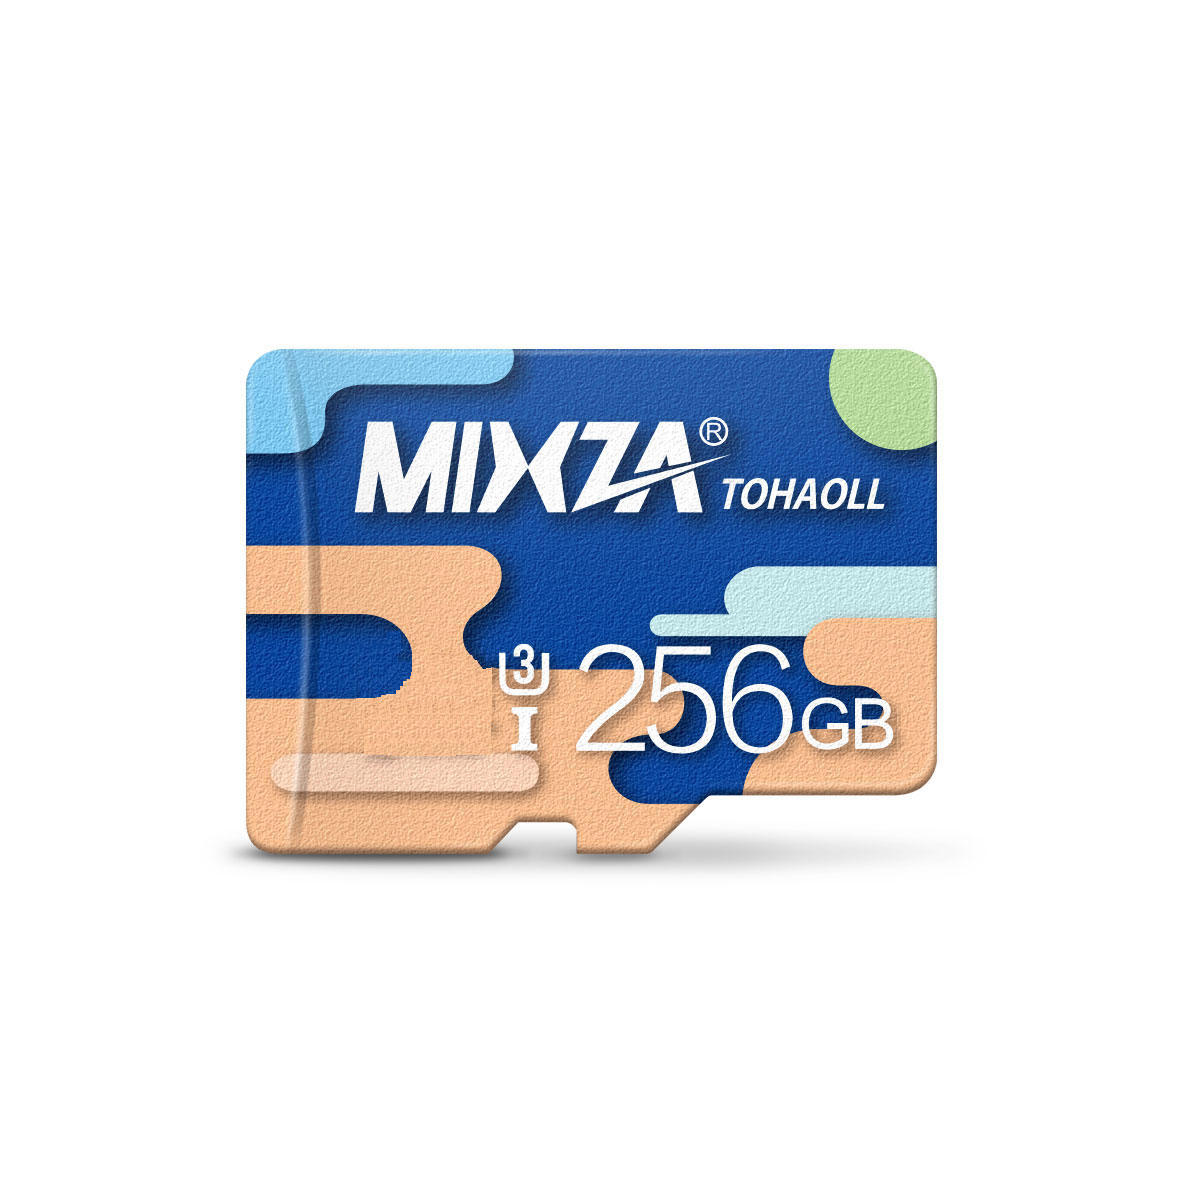 MIXZA Colorful Edition 256GB U3 TF Micro Memory Card for Digital Camera TV Box MP3 Smartphone